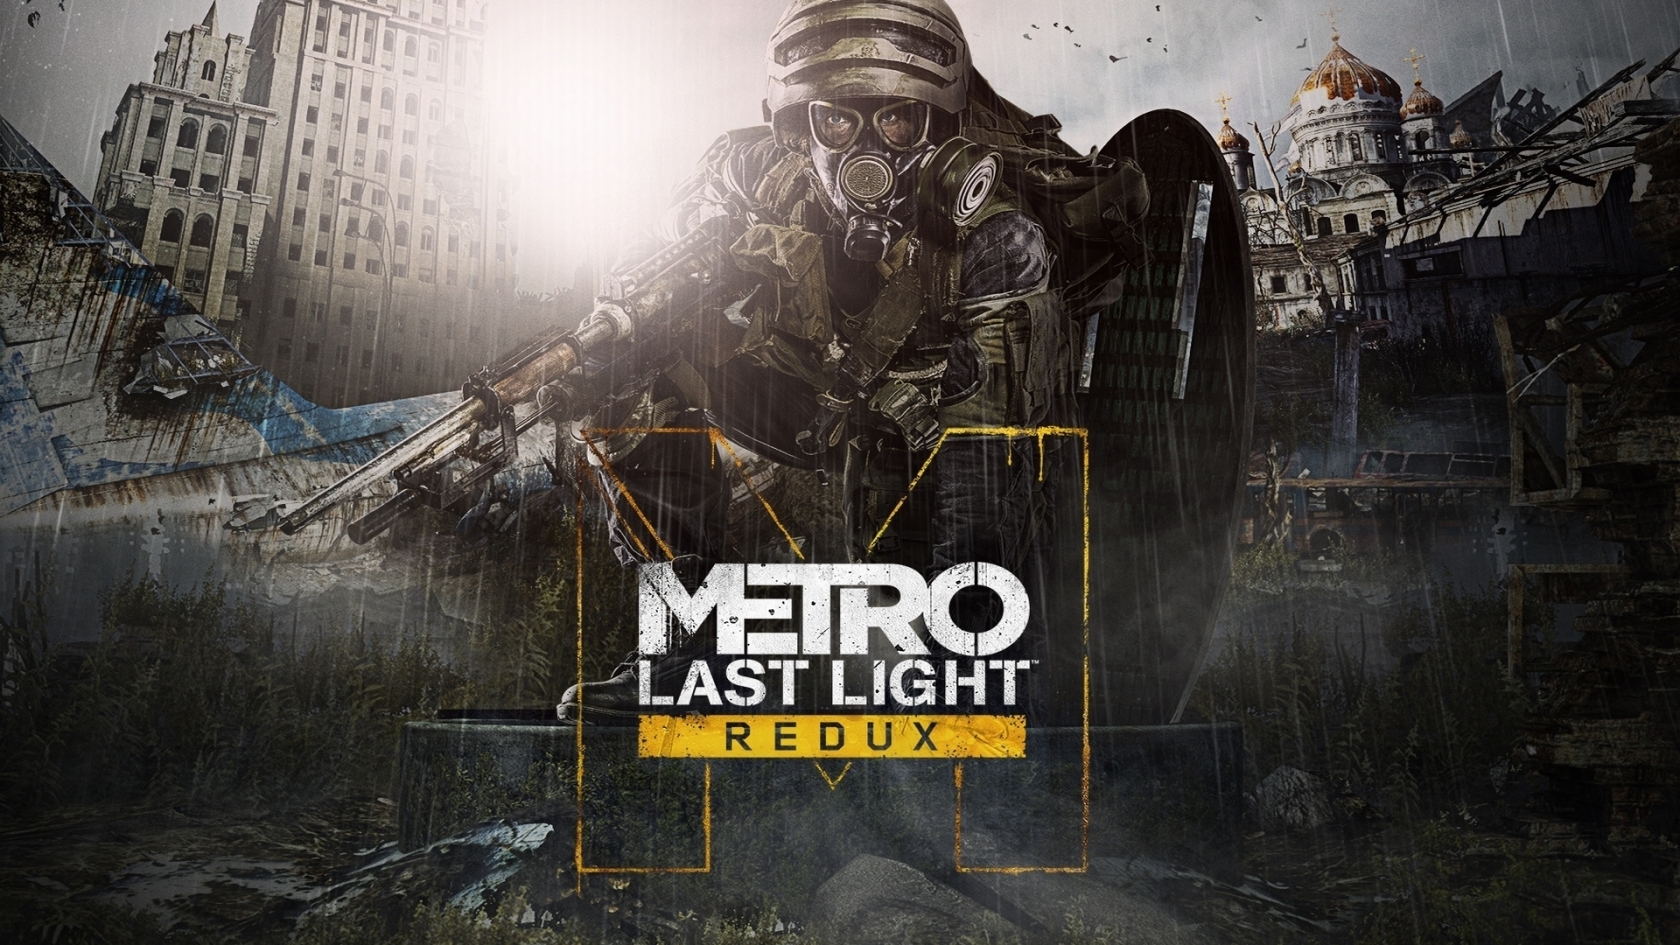 Metro Last Light Redux for 1680 x 945 HDTV resolution